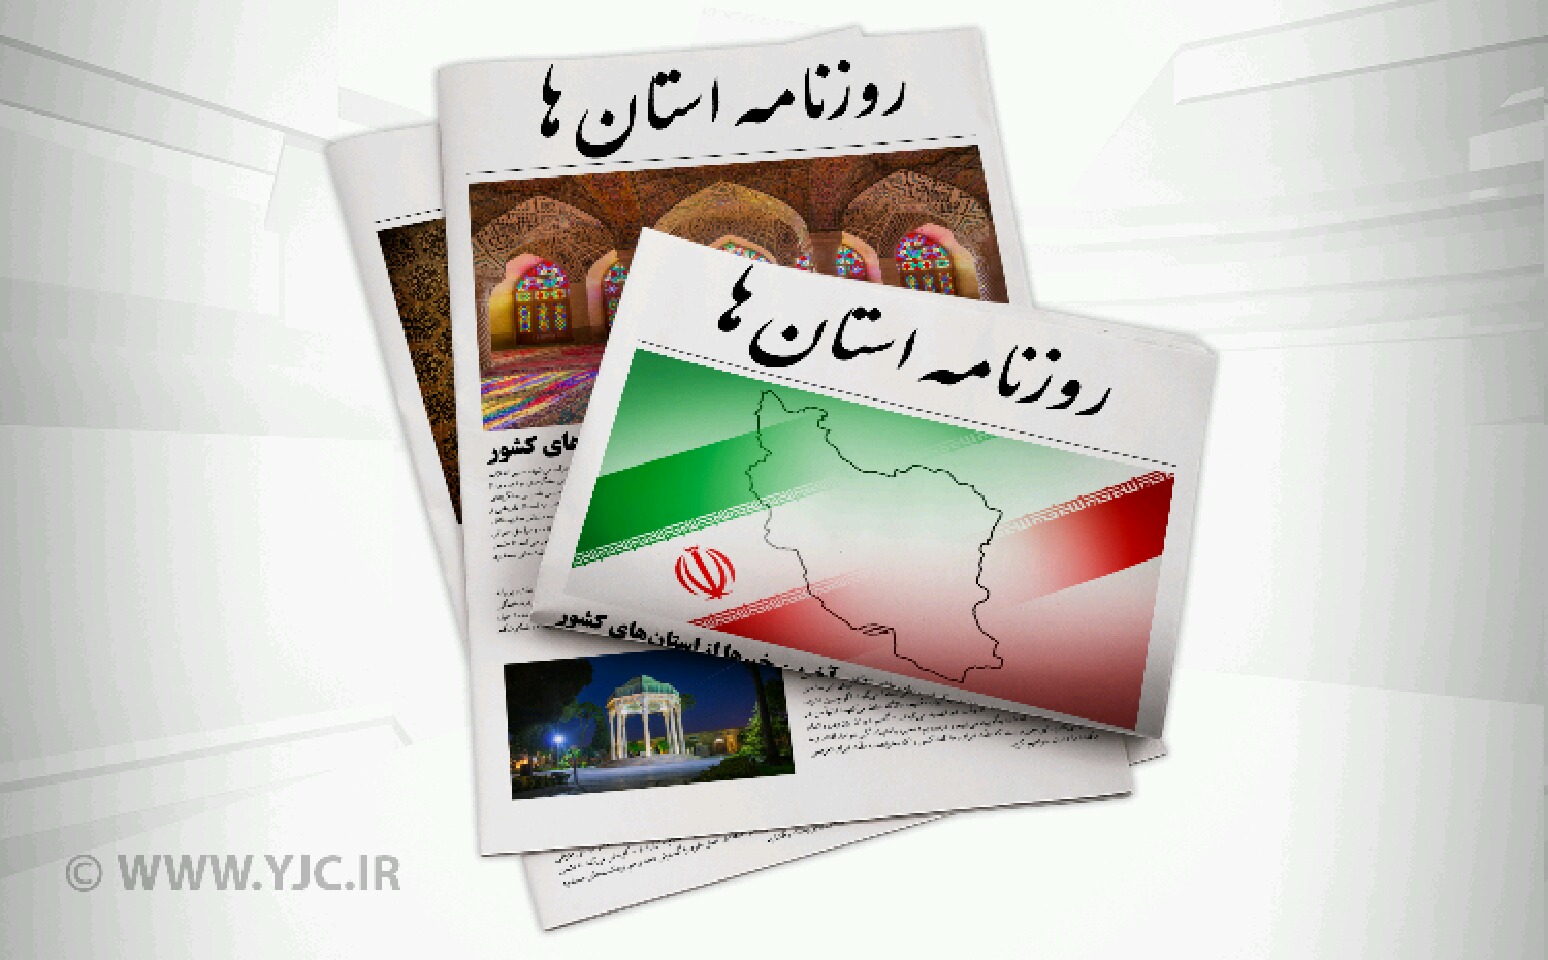 جریمه ۲۶ روزه برای پیشگیری از جریمه روزانه ۵۰ هزار تومانی/ شلیک ایران به مکانیسم ماشه